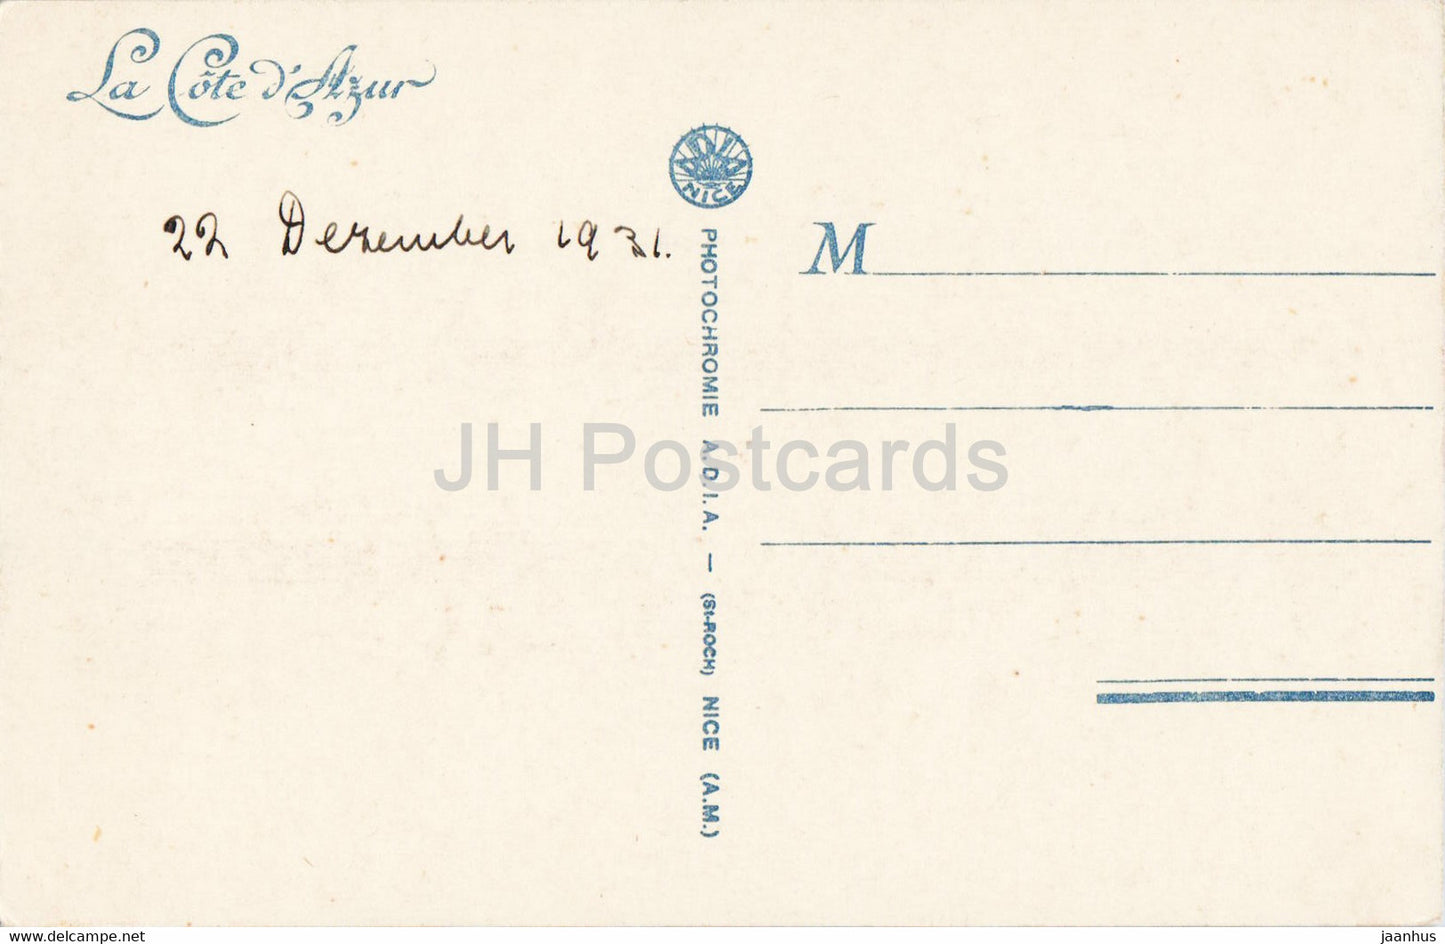 Beaulieu sur Mer - Vue Generale et le Cap Ferrat - 1 - alte Postkarte - 1931 - Frankreich - gebraucht